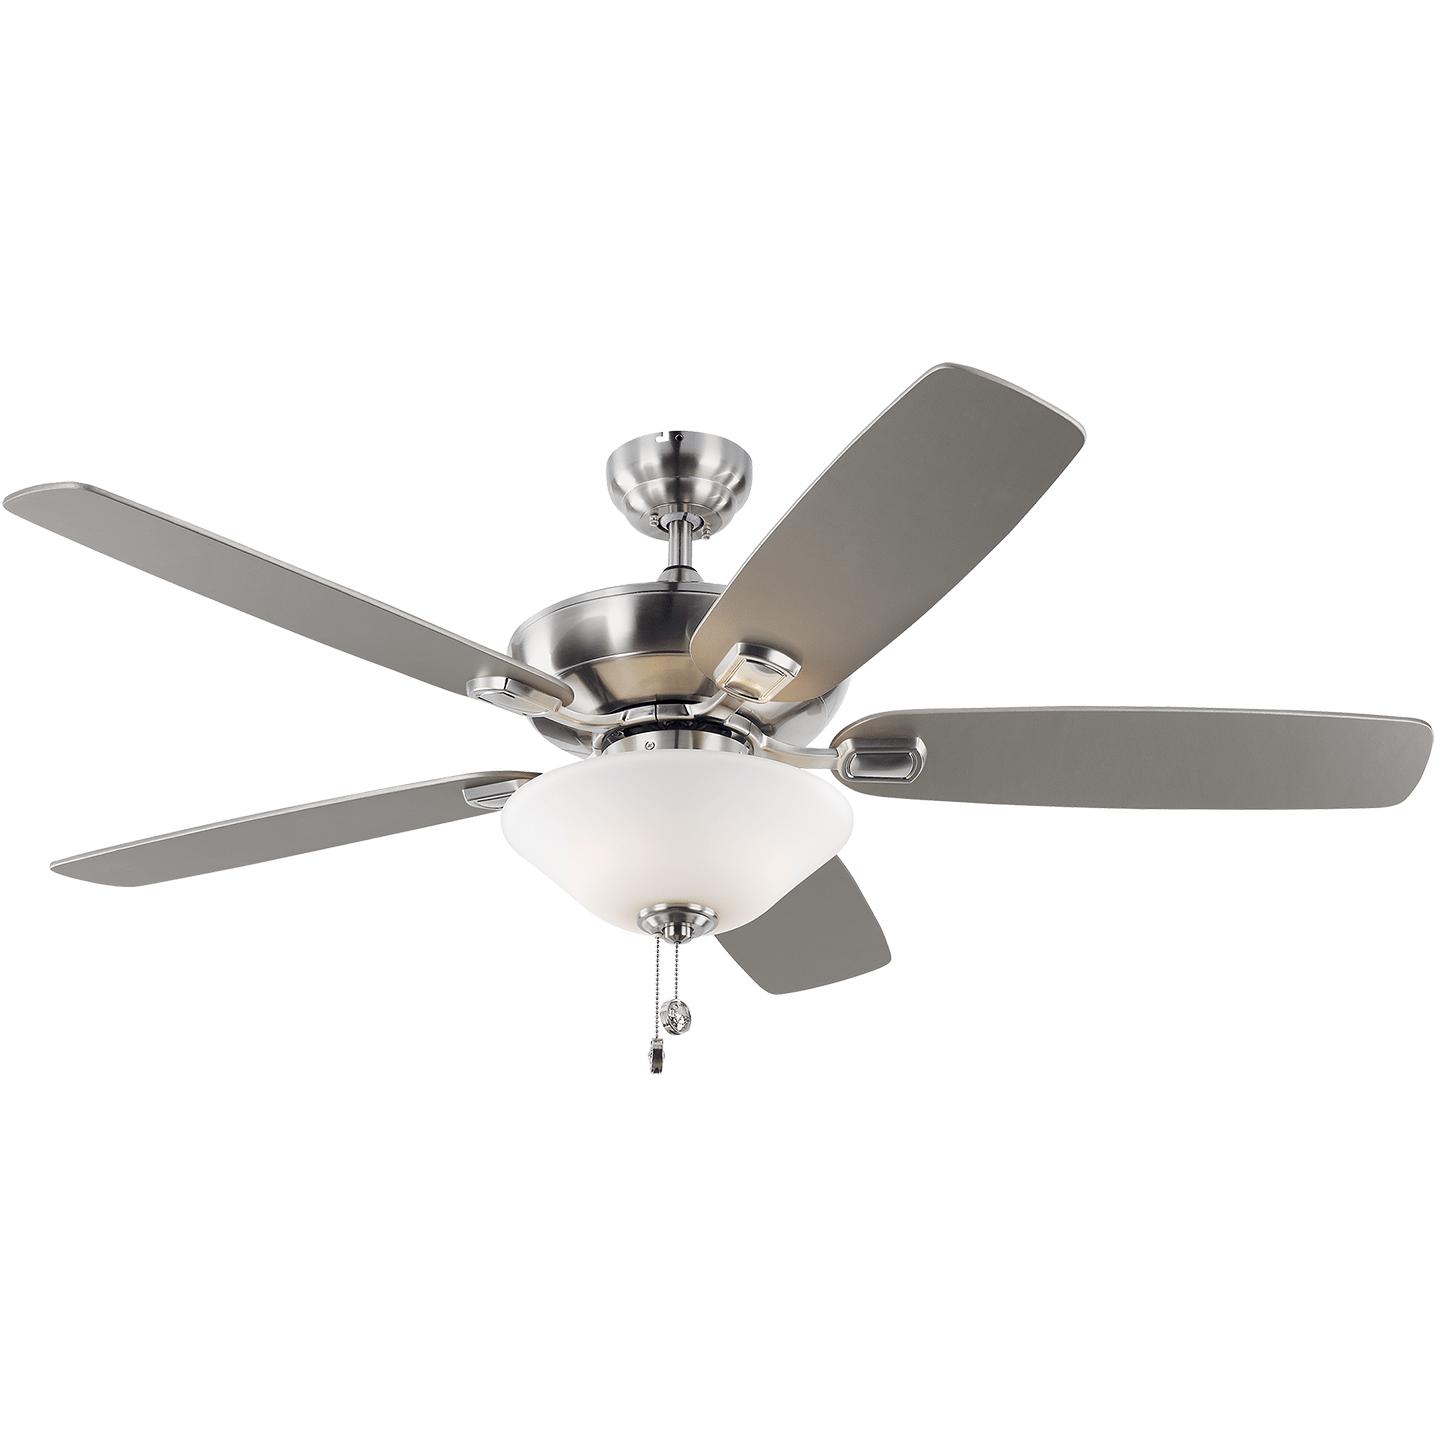 Купить Потолочный вентилятор Colony 52" LED Ceiling Fan в интернет-магазине roooms.ru